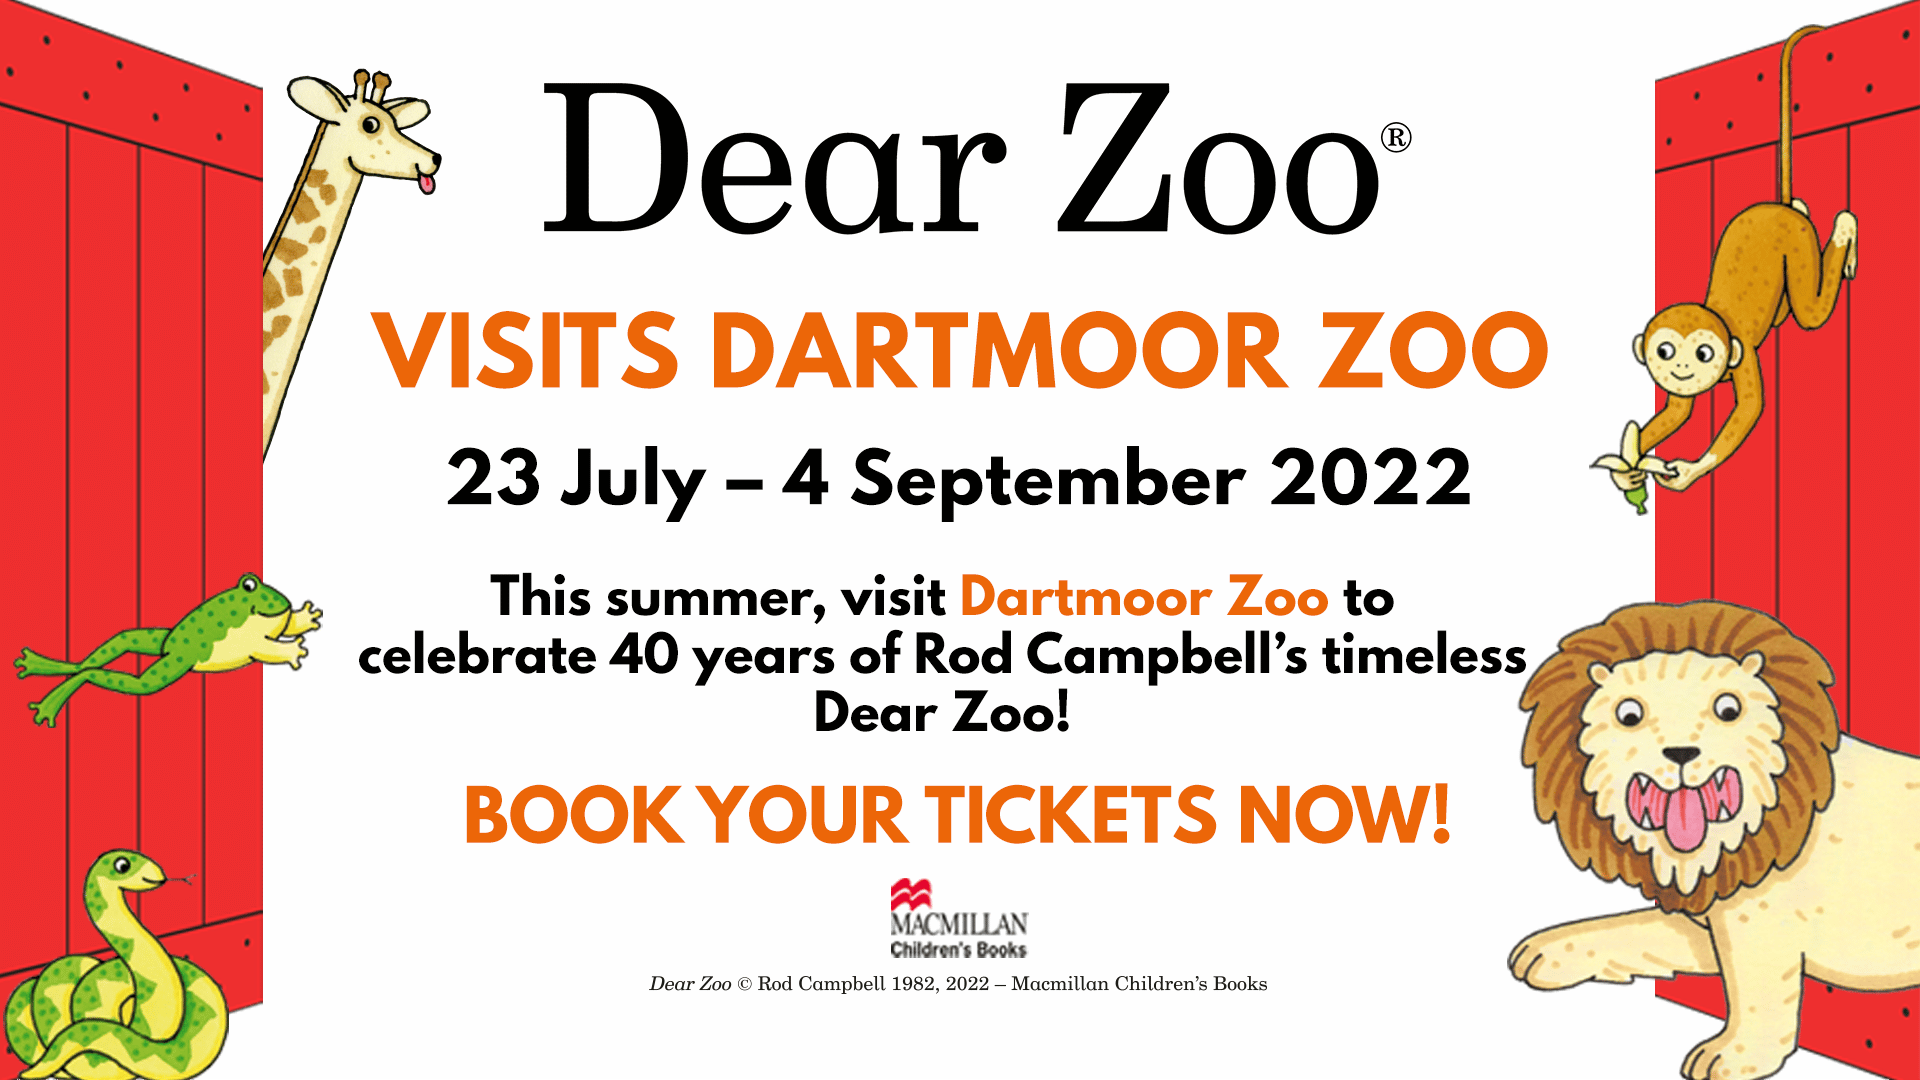 Dear Zoo® visits Dartmoor Zoo!